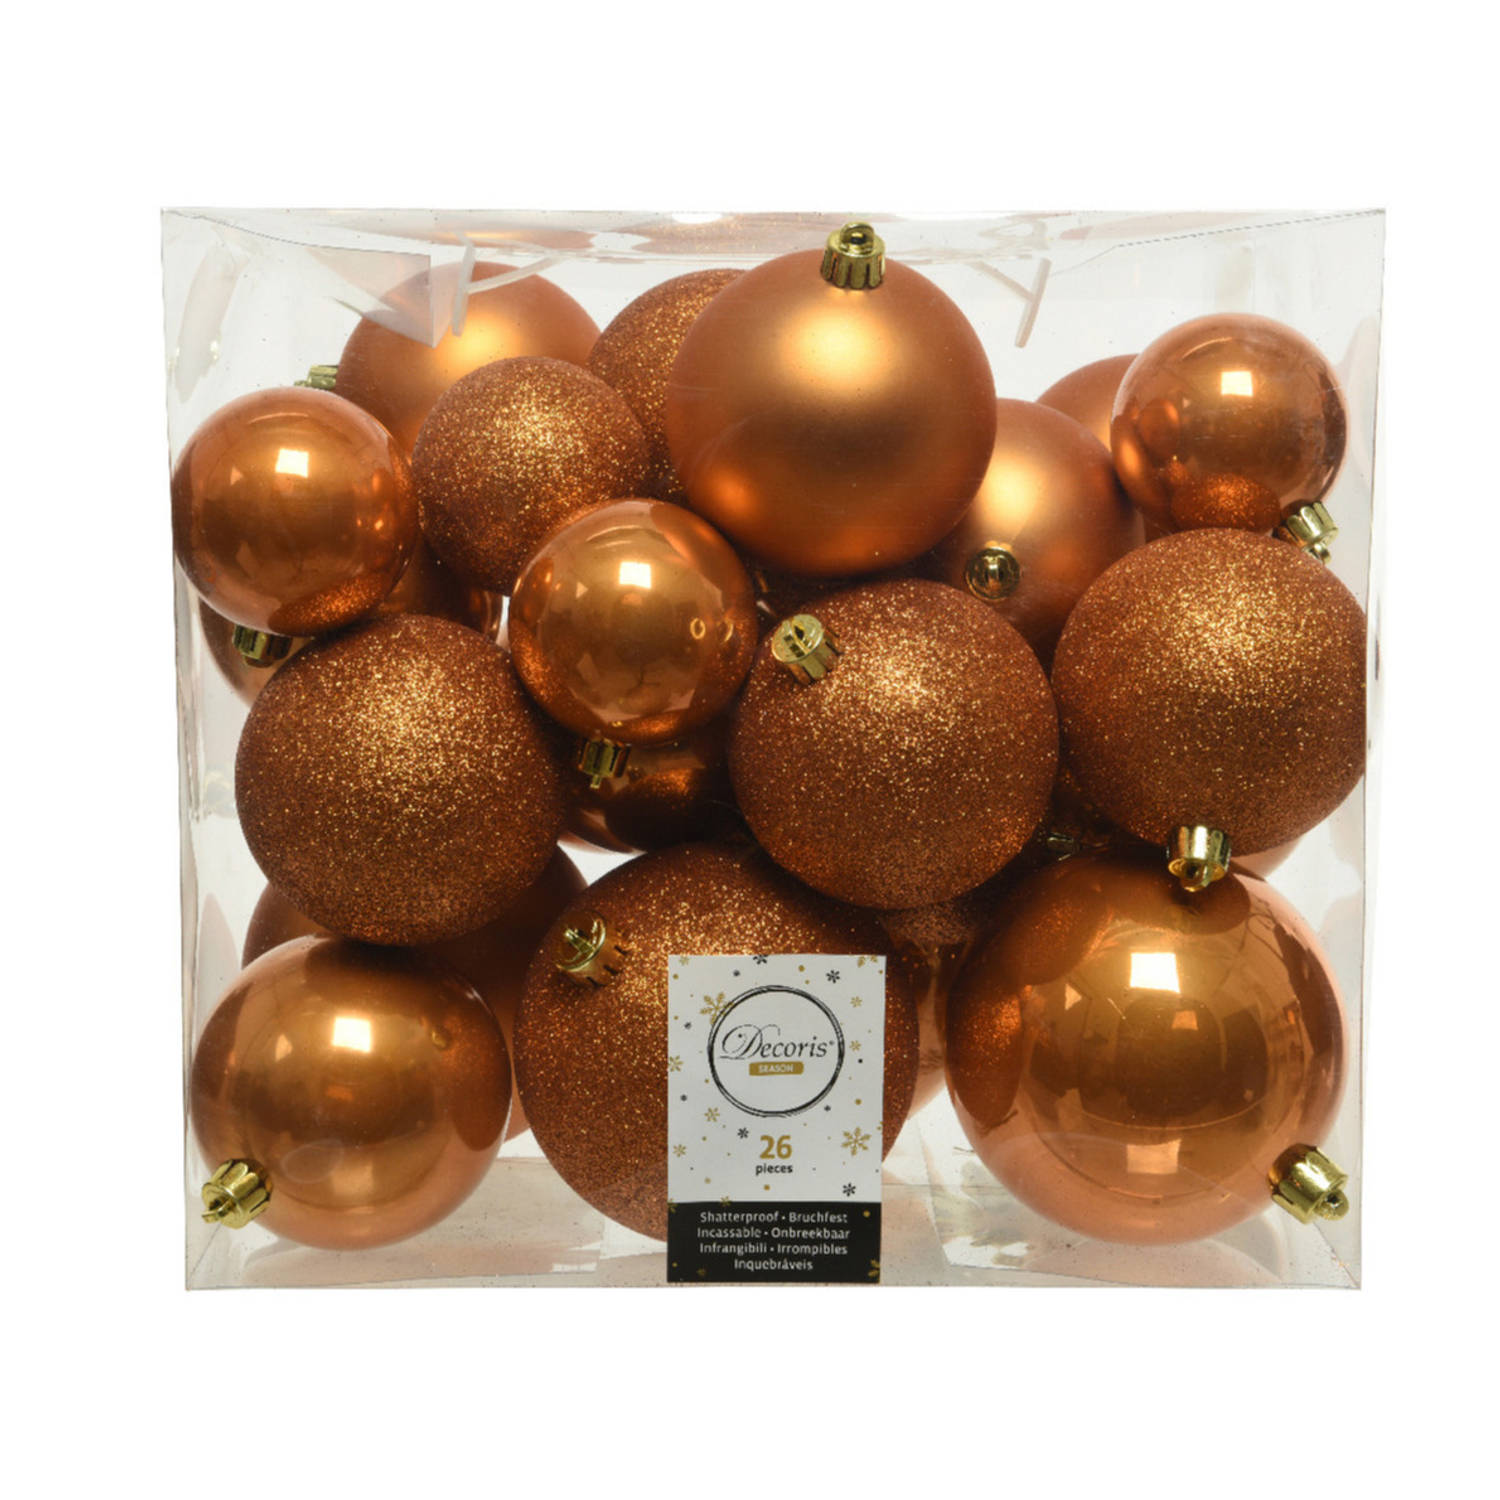 26x stuks kunststof kerstballen cognac bruin (amber) 6-8-10 cm glans/mat/glitter - Kerstbal